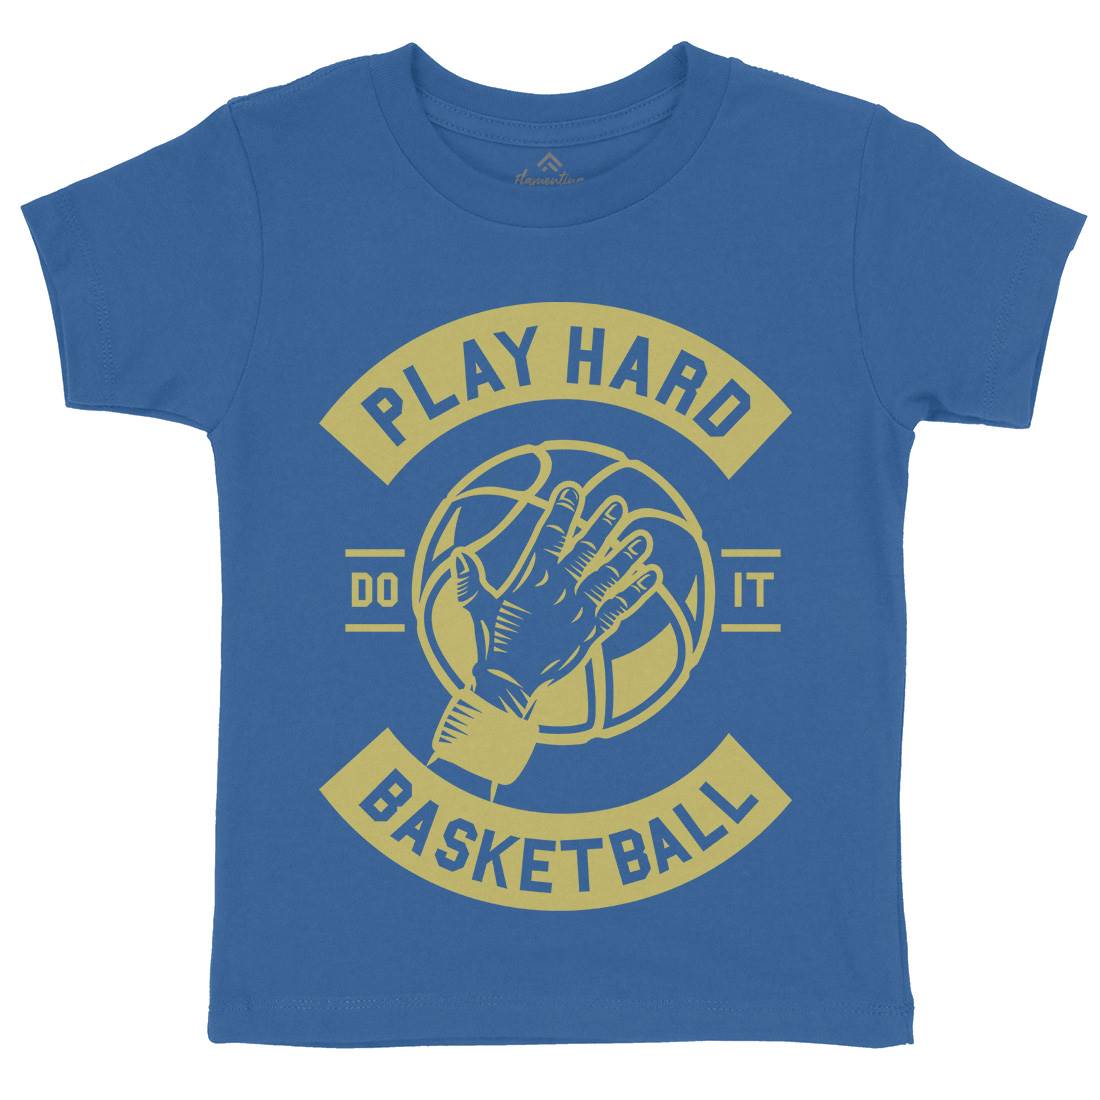 Play Hard Basketball Kids Crew Neck T-Shirt Sport A261